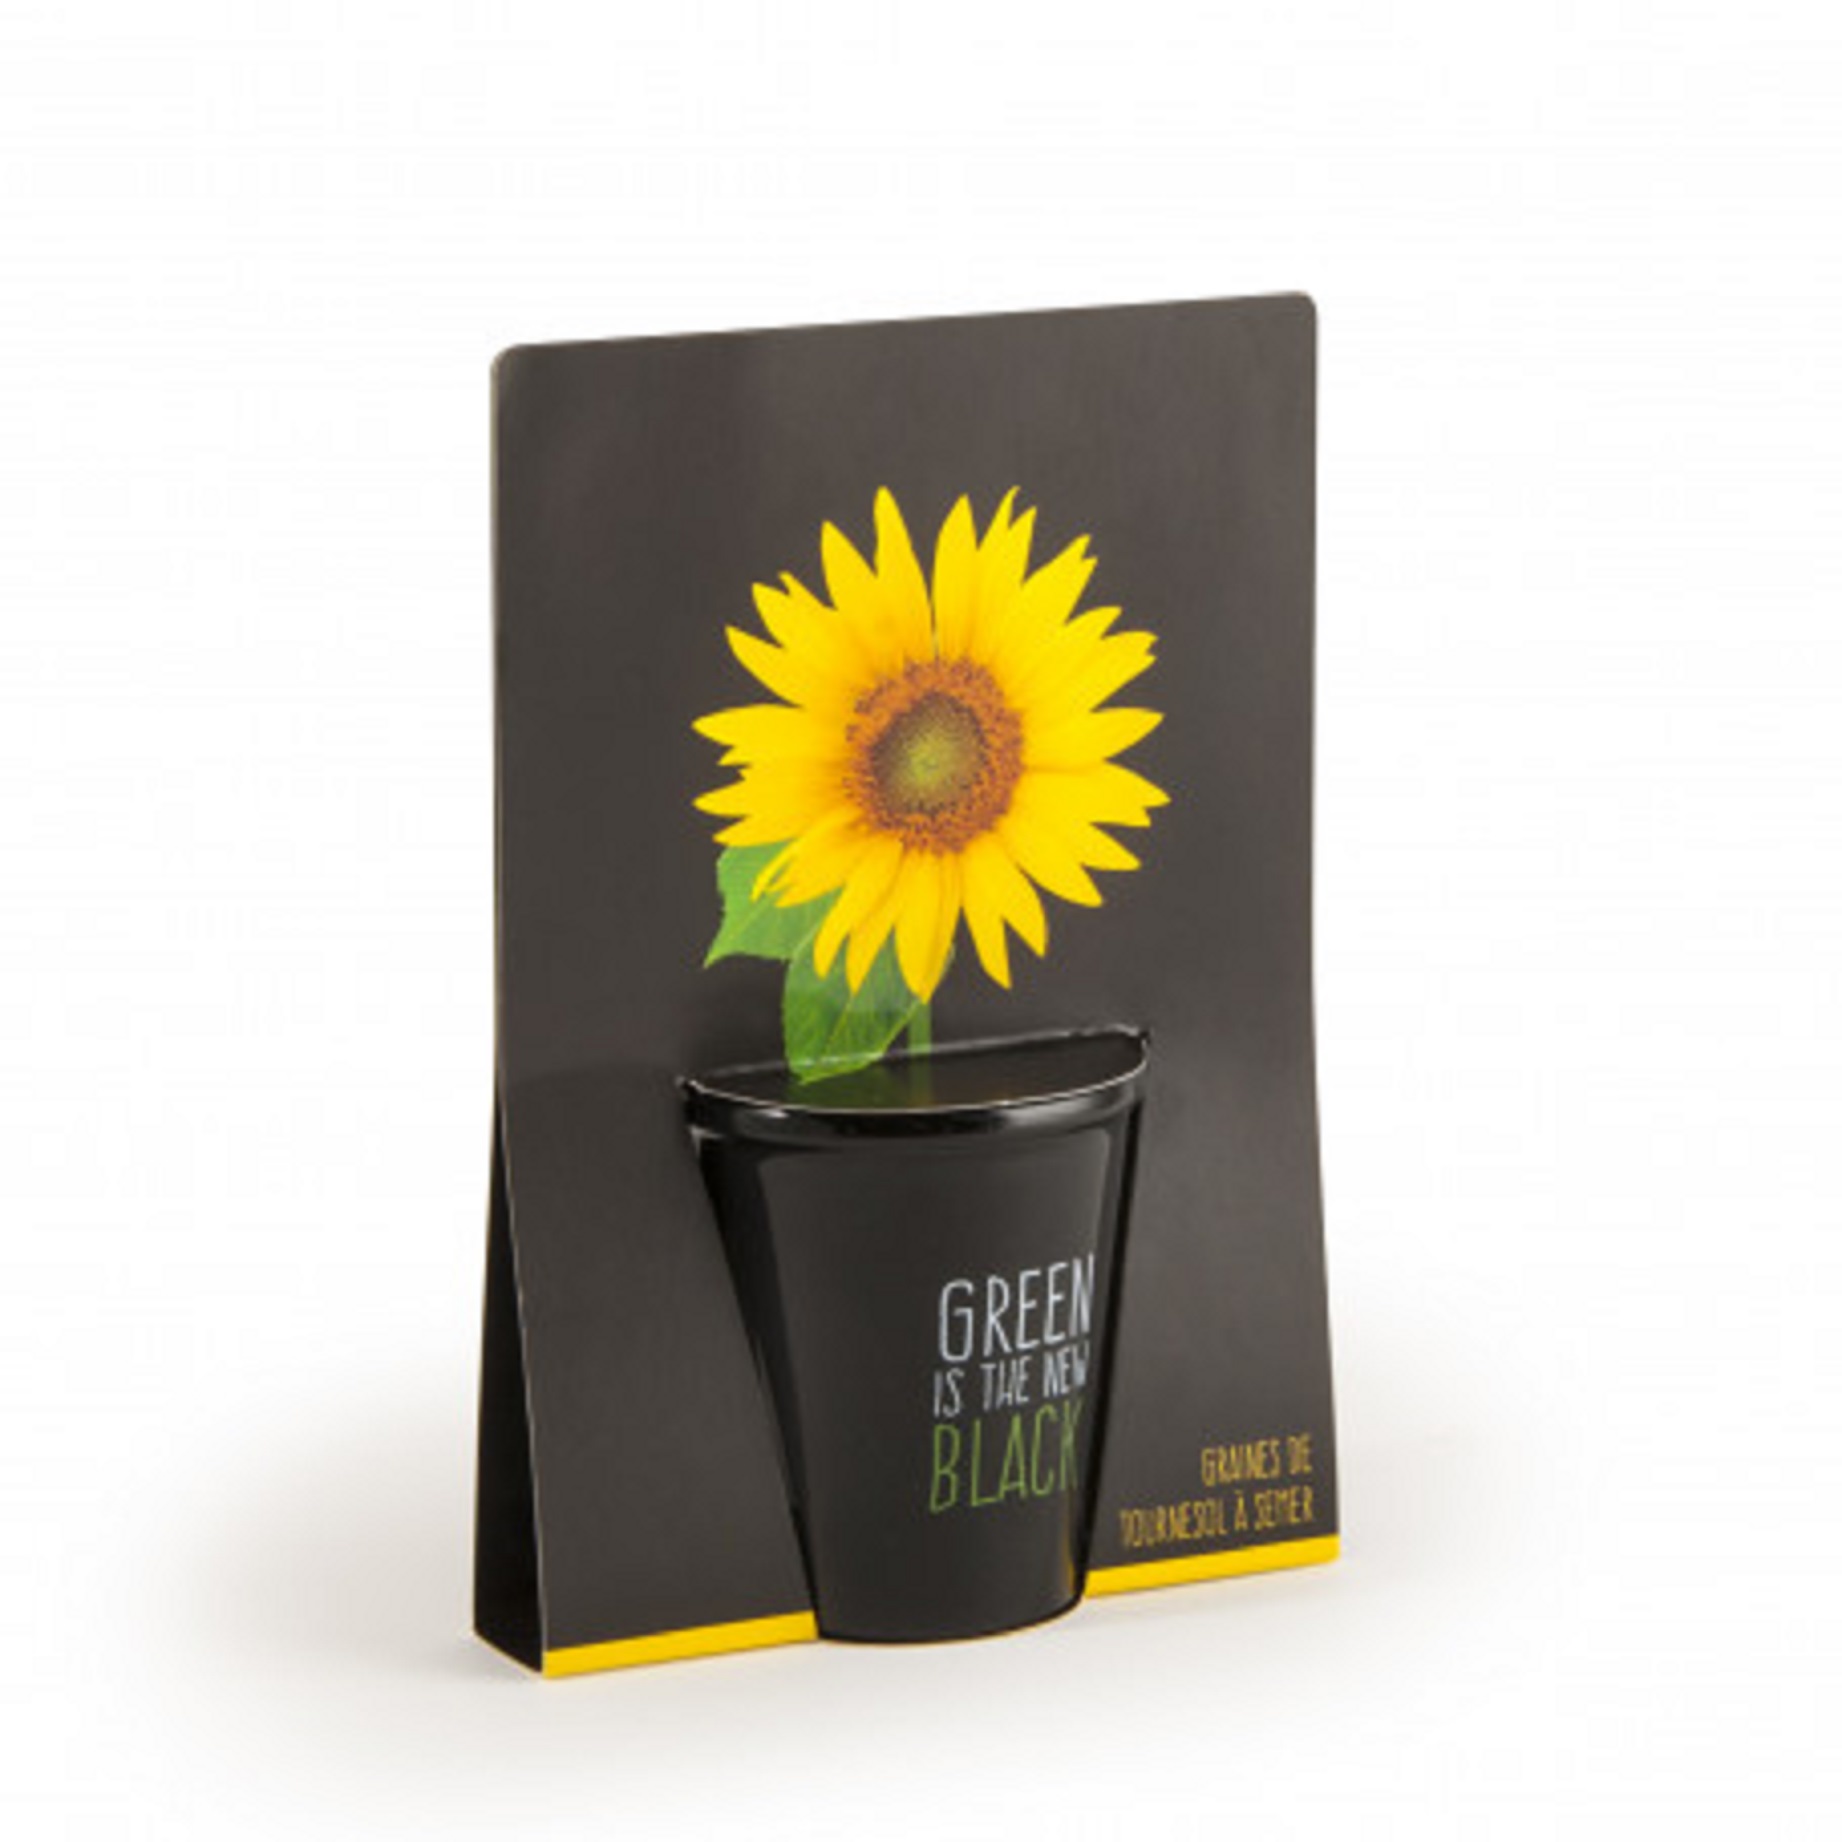 Kit Complet Pentru Plantat Cu Seminte De Floarea-soarelui - Green Is The New Black | Radis Et Capucine